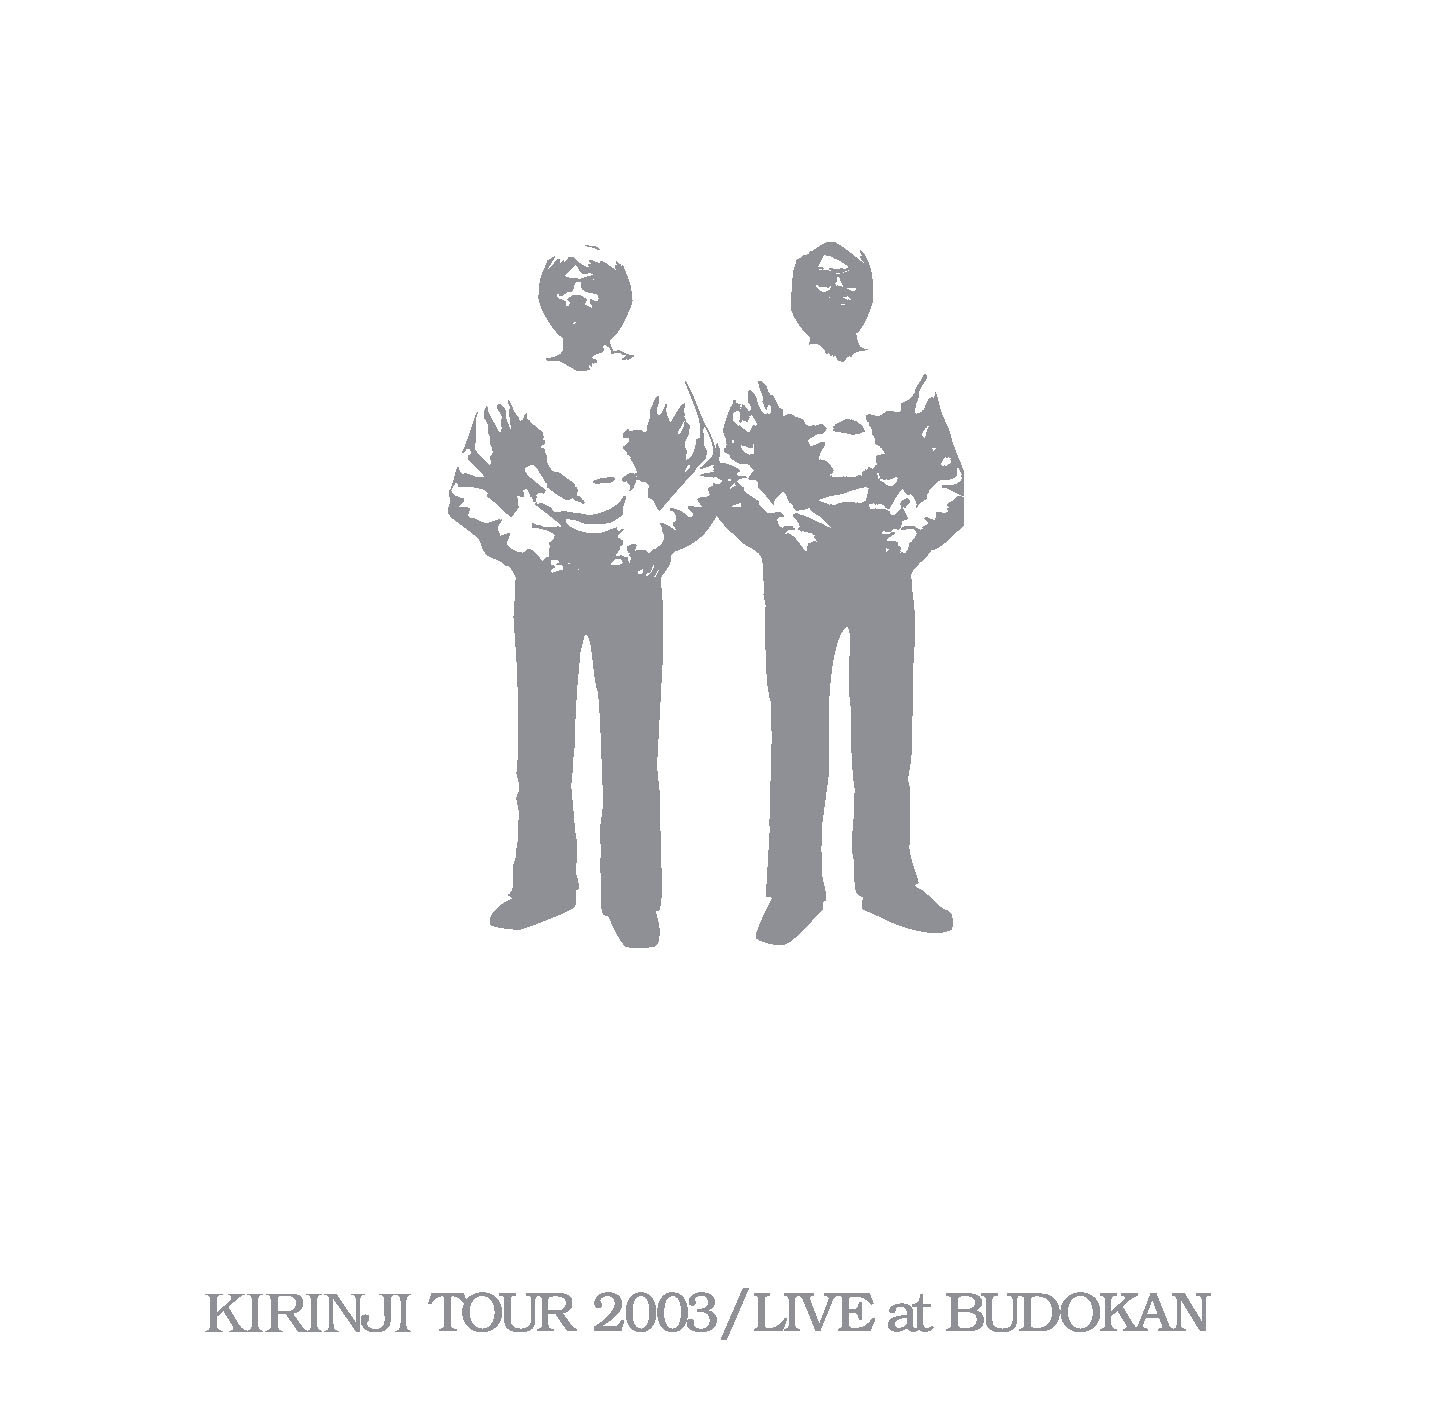 KIRINJI TOUR 2003 / LIVE at BUDOKAN